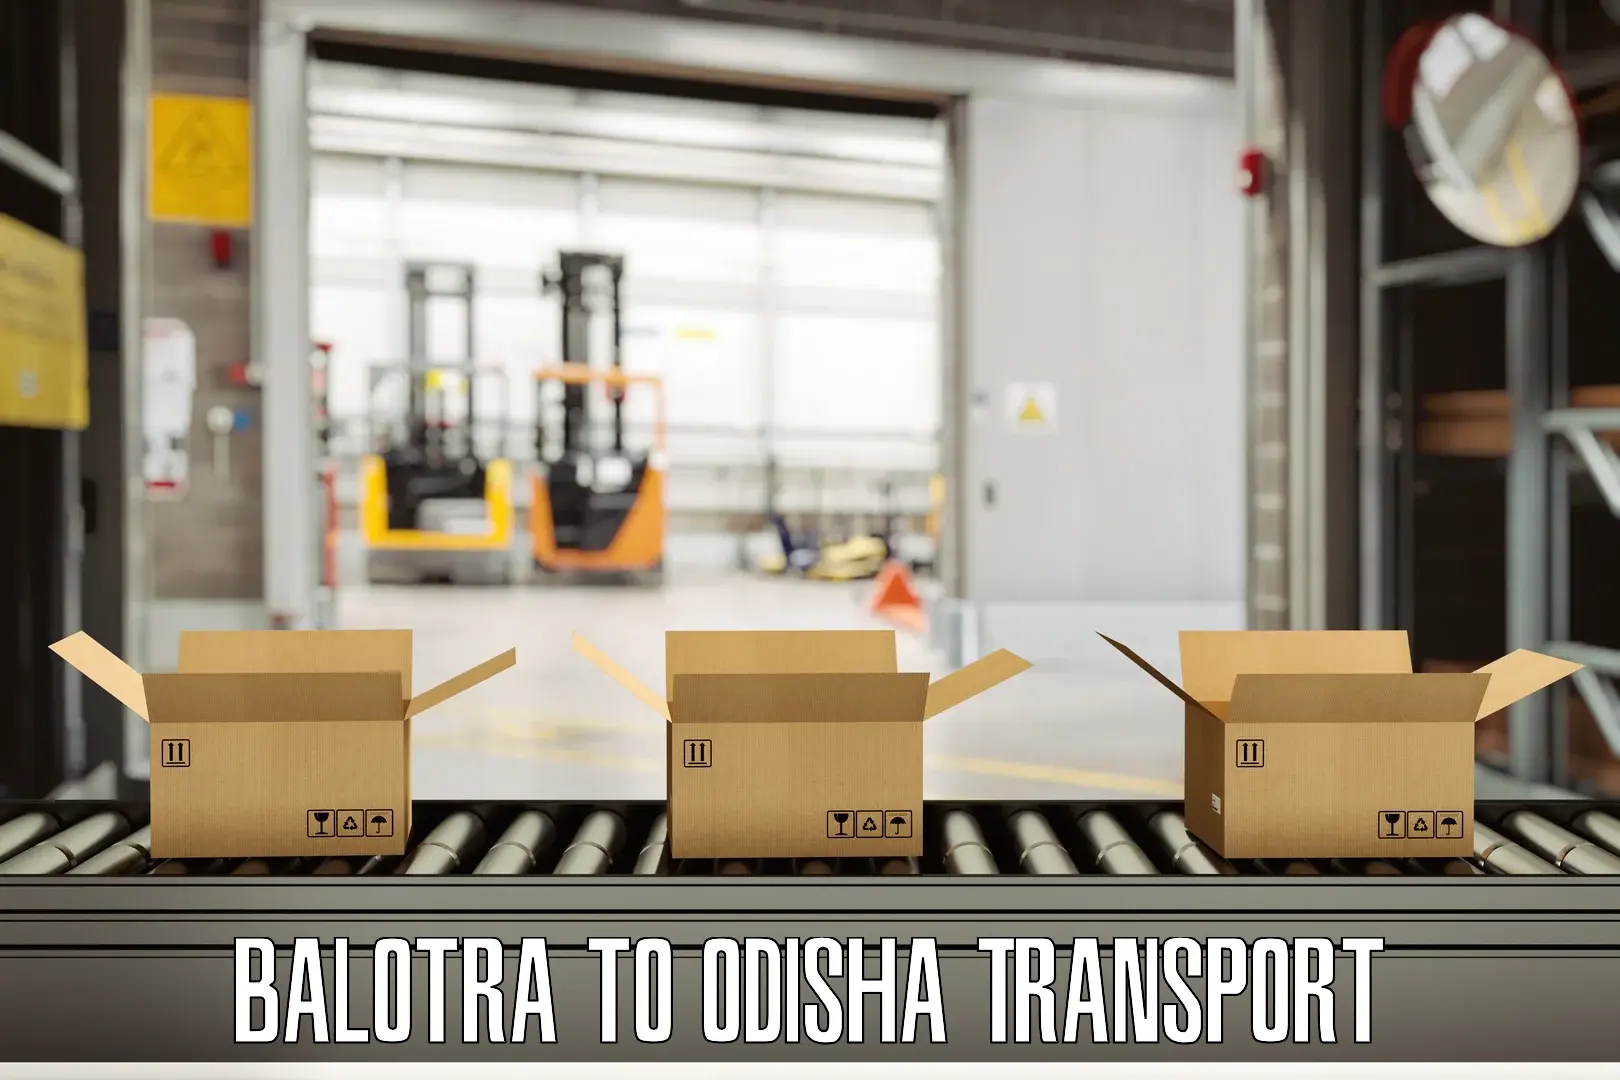 Lorry transport service Balotra to Ukhunda